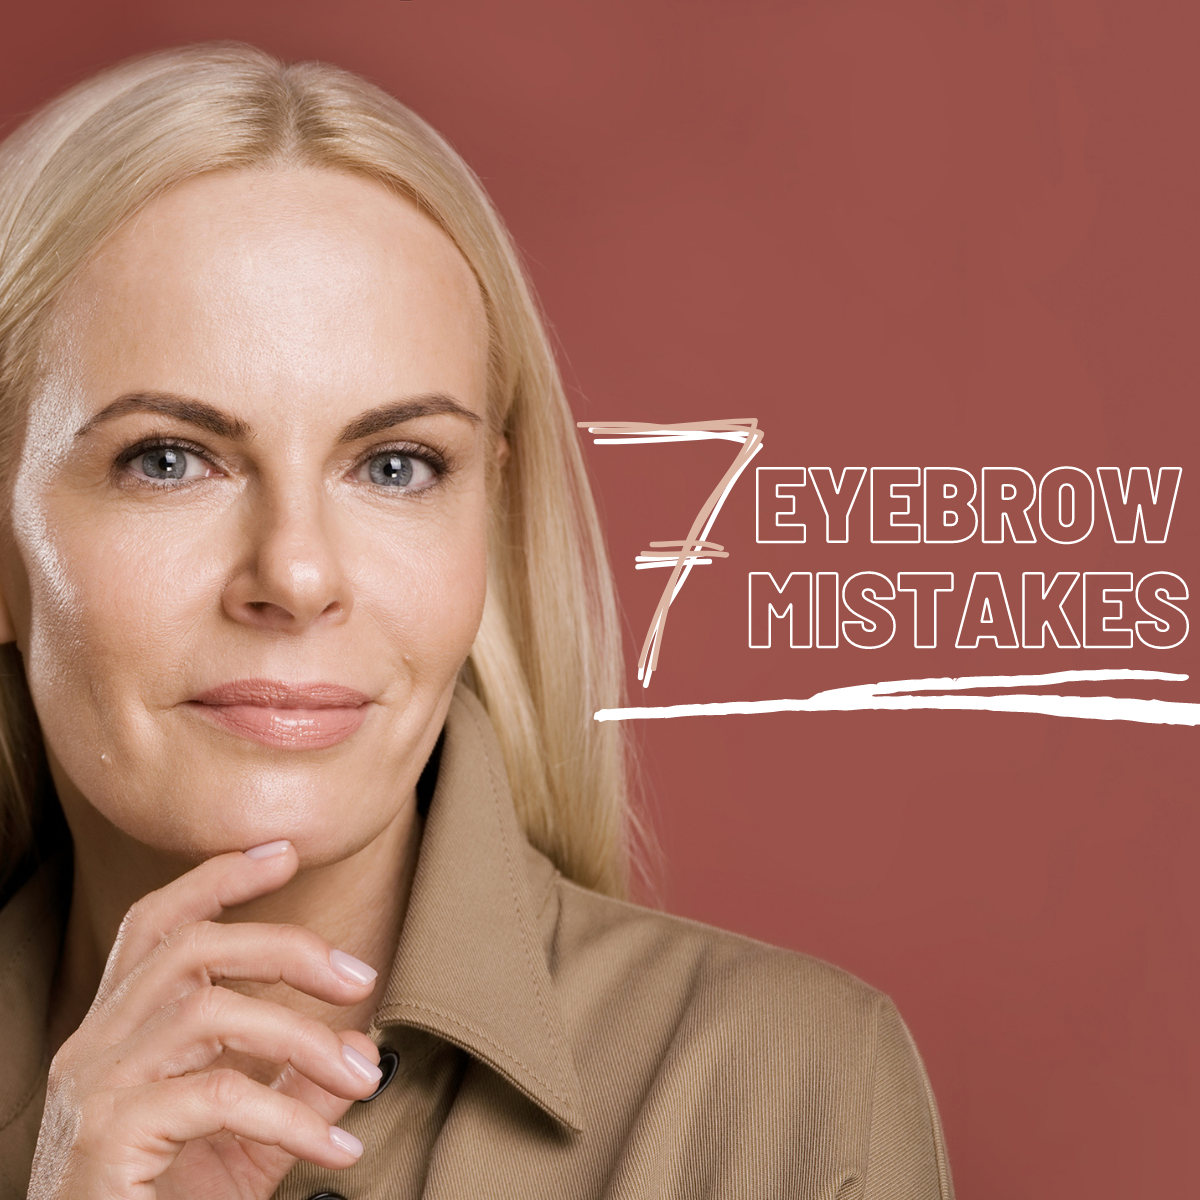 7 eyebrow mistakes